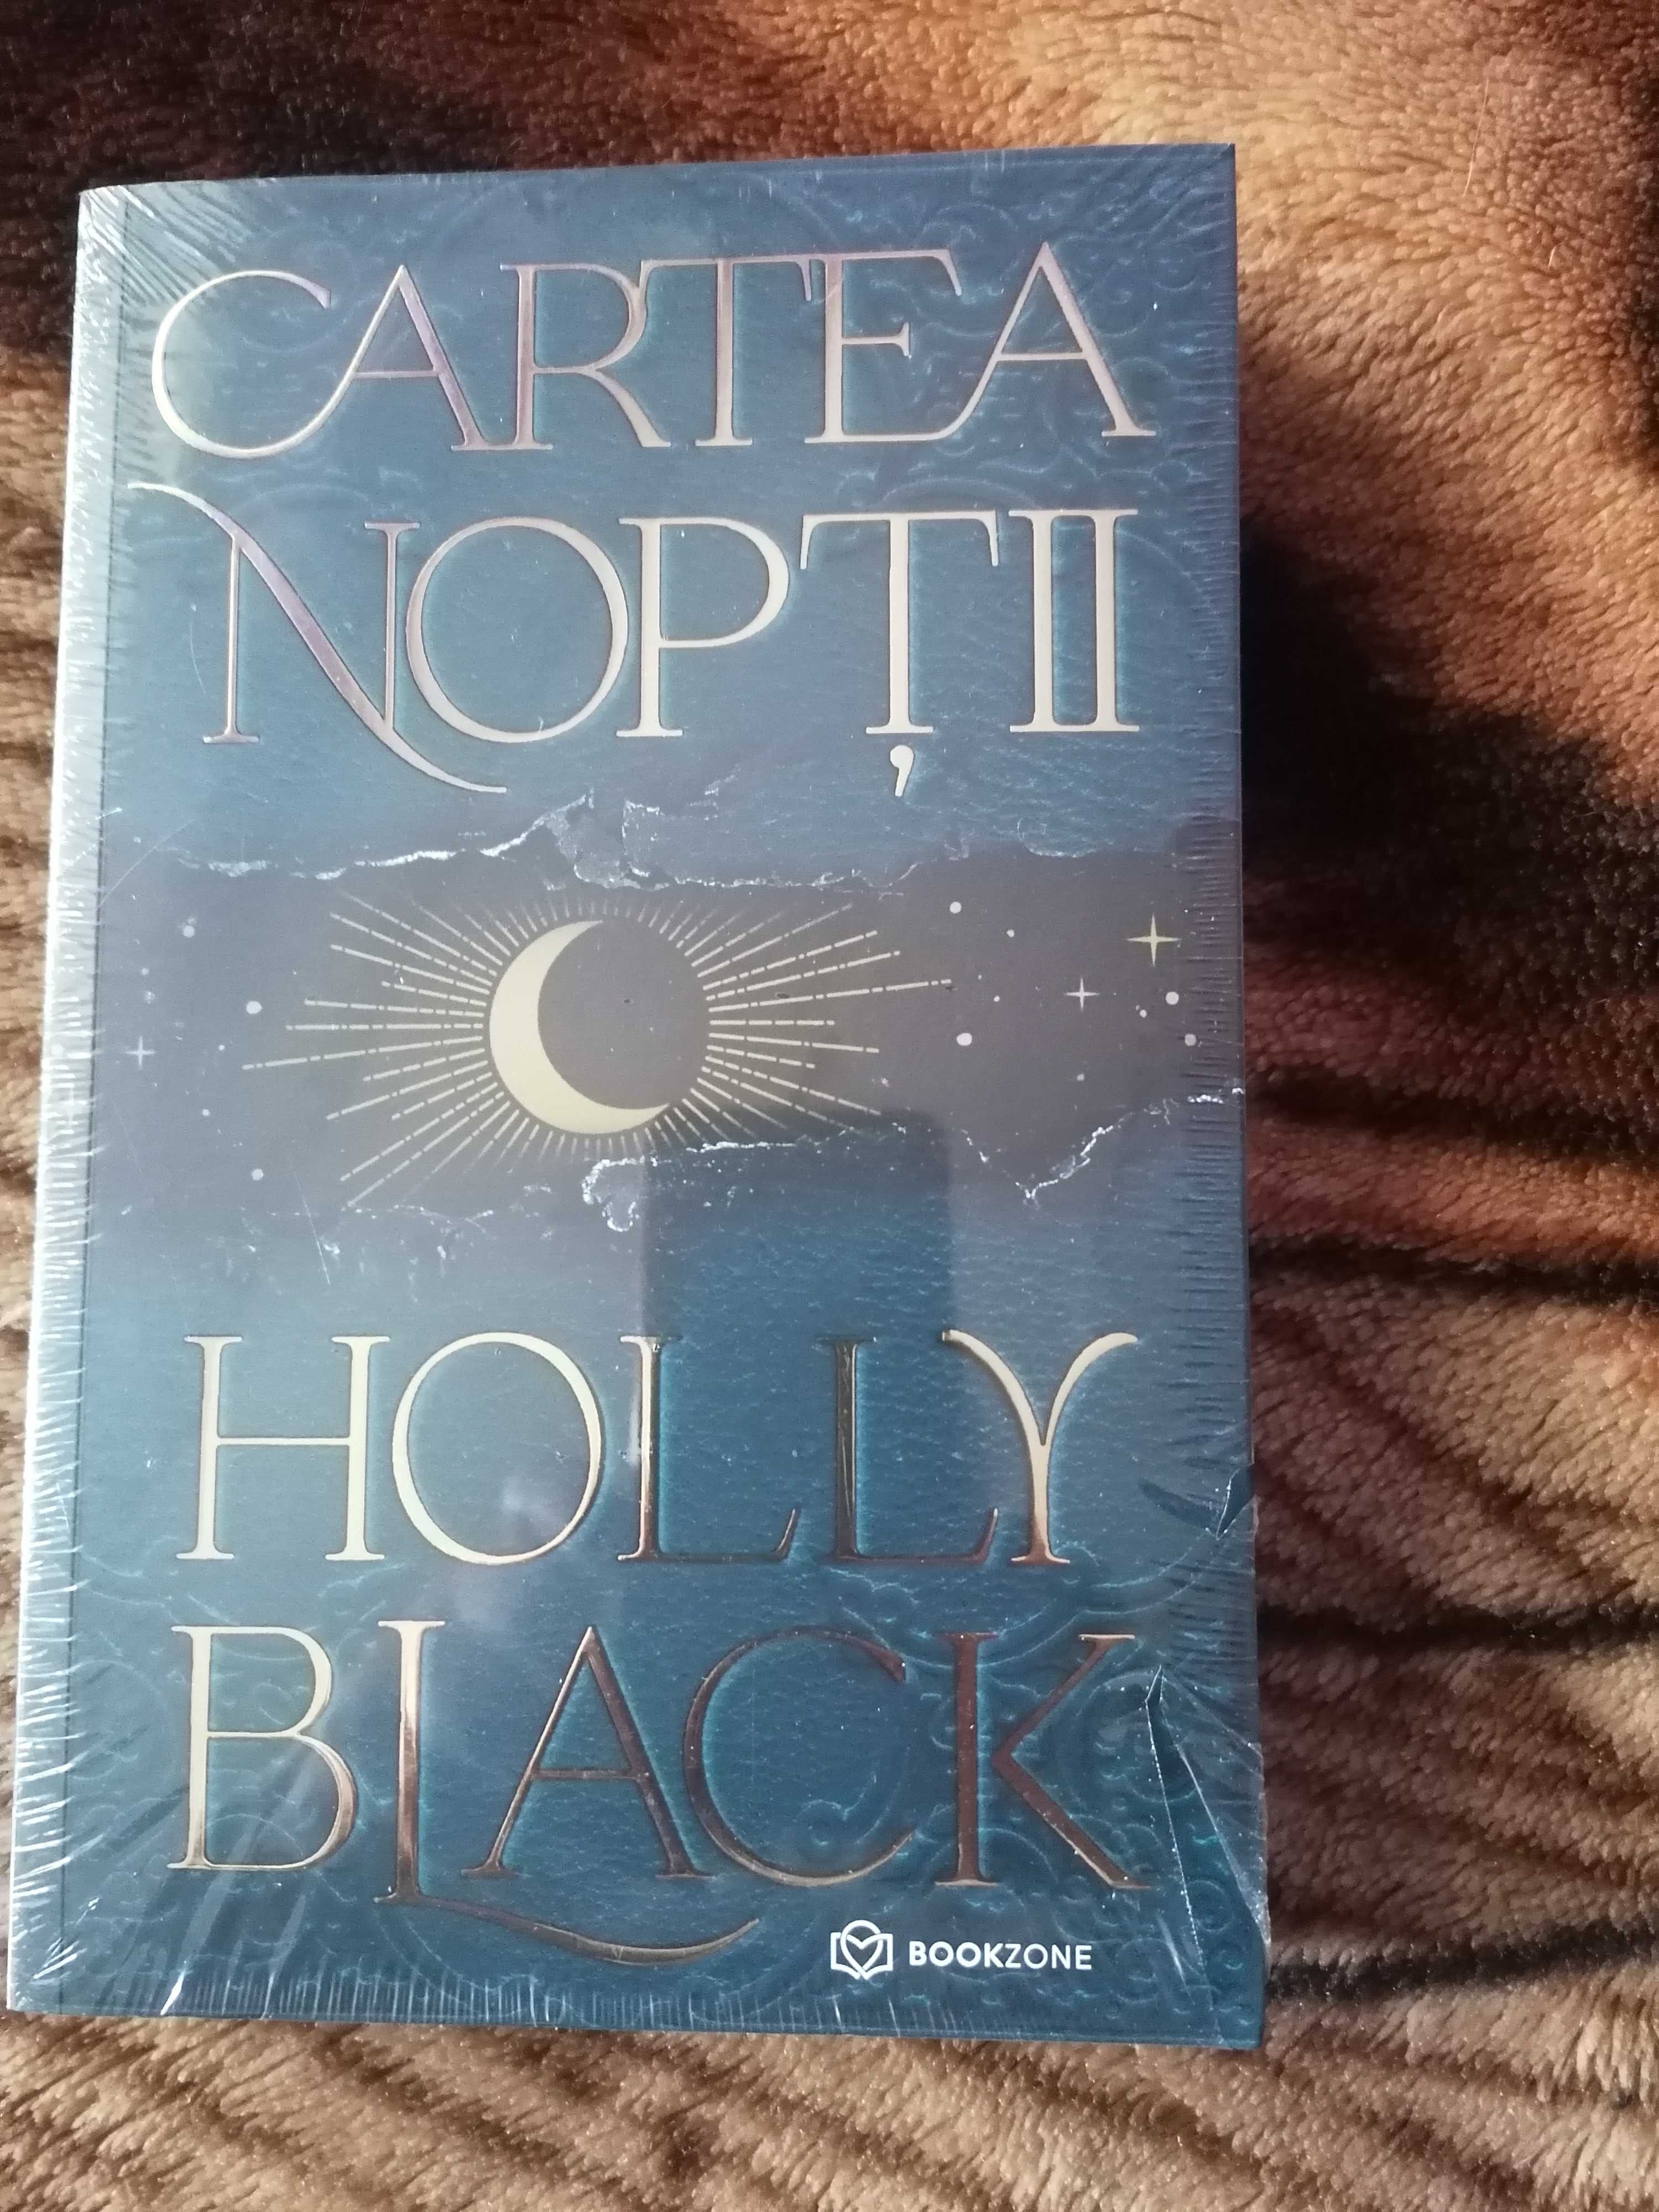 Cartea nopții Holly Black/Atlas și cei 6 alesi